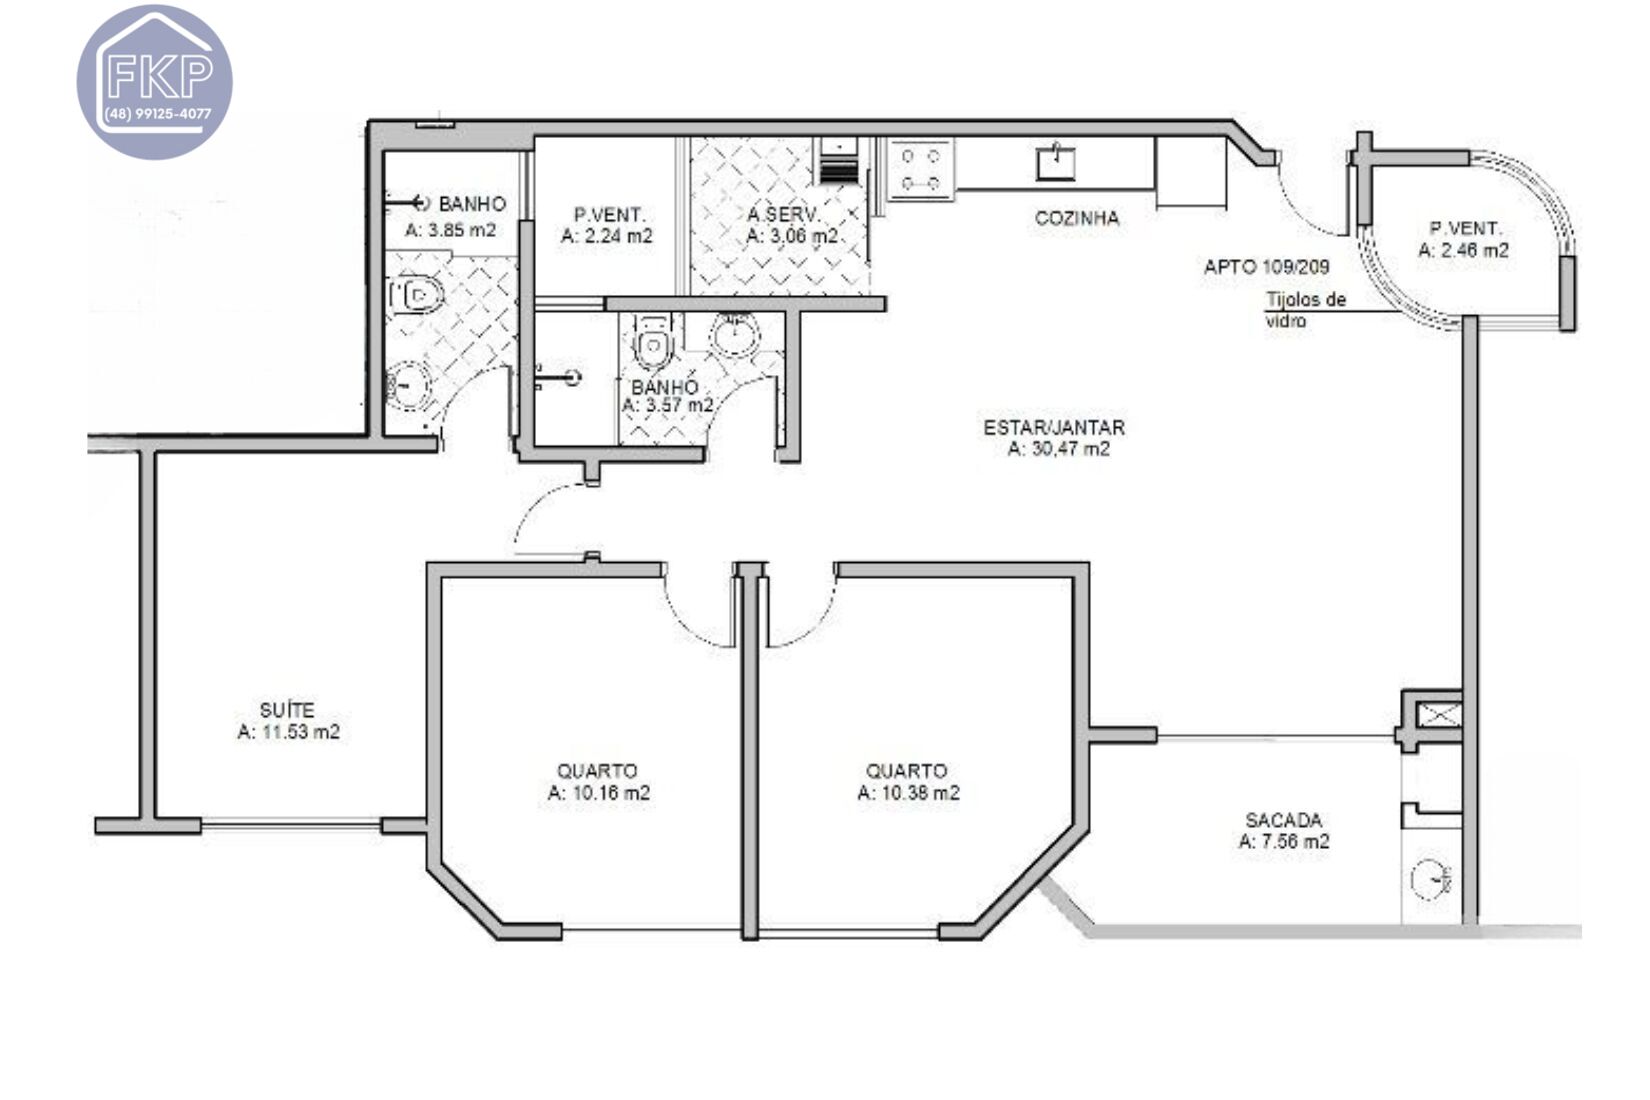 Apartamento, 3 quartos, 106 m² - Foto 4